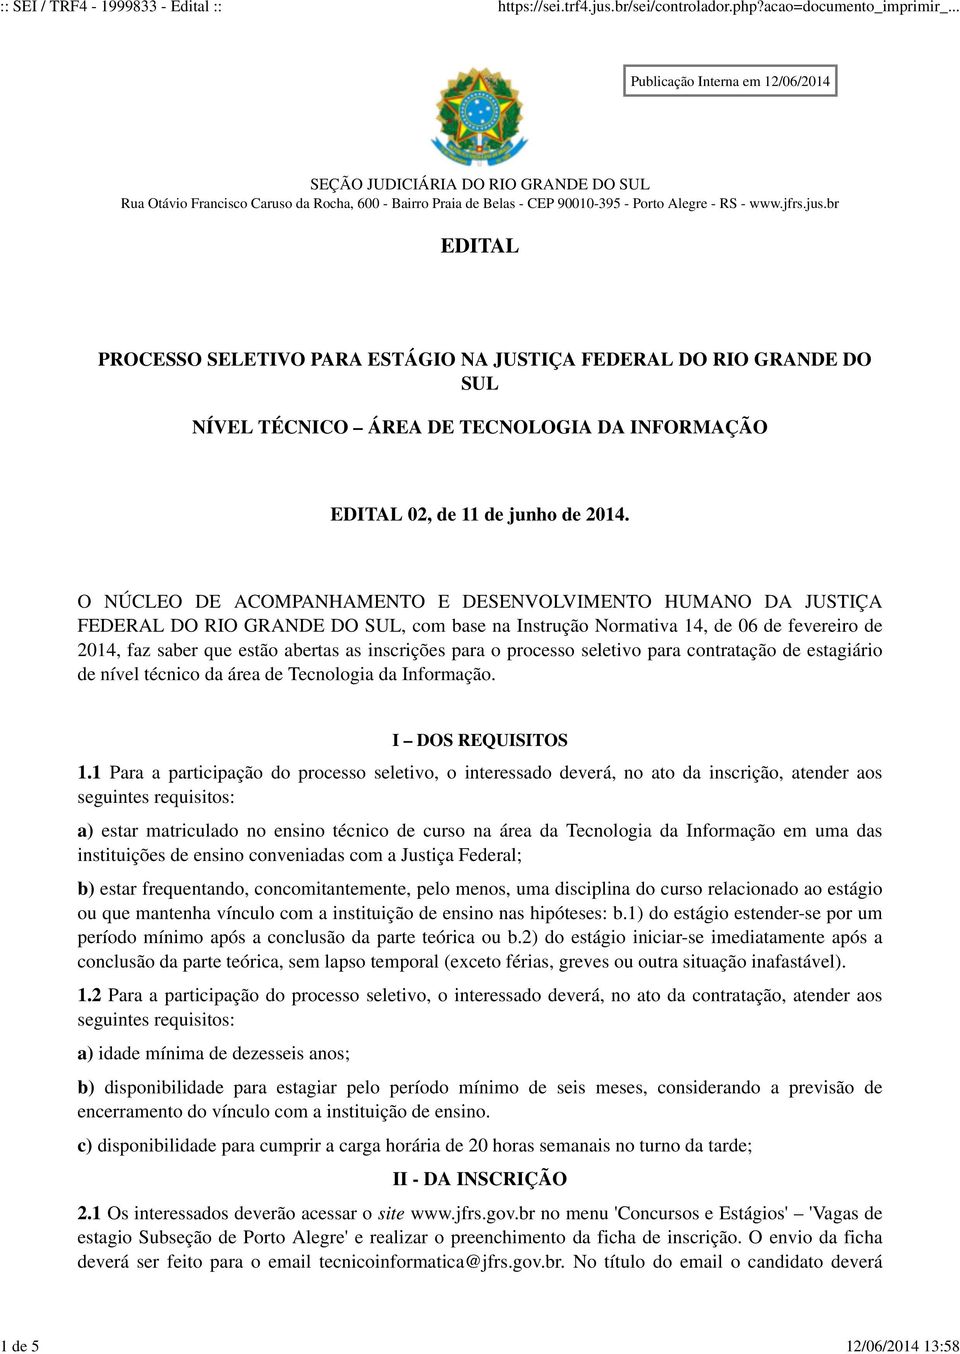 O NÚCLEO DE ACOMPANHAMENTO E DESENVOLVIMENTO HUMANO DA JUSTIÇA FEDERAL DO RIO GRANDE DO SUL, com base na Instrução Normativa 14, de 06 de fevereiro de 2014, faz saber que estão abertas as inscrições